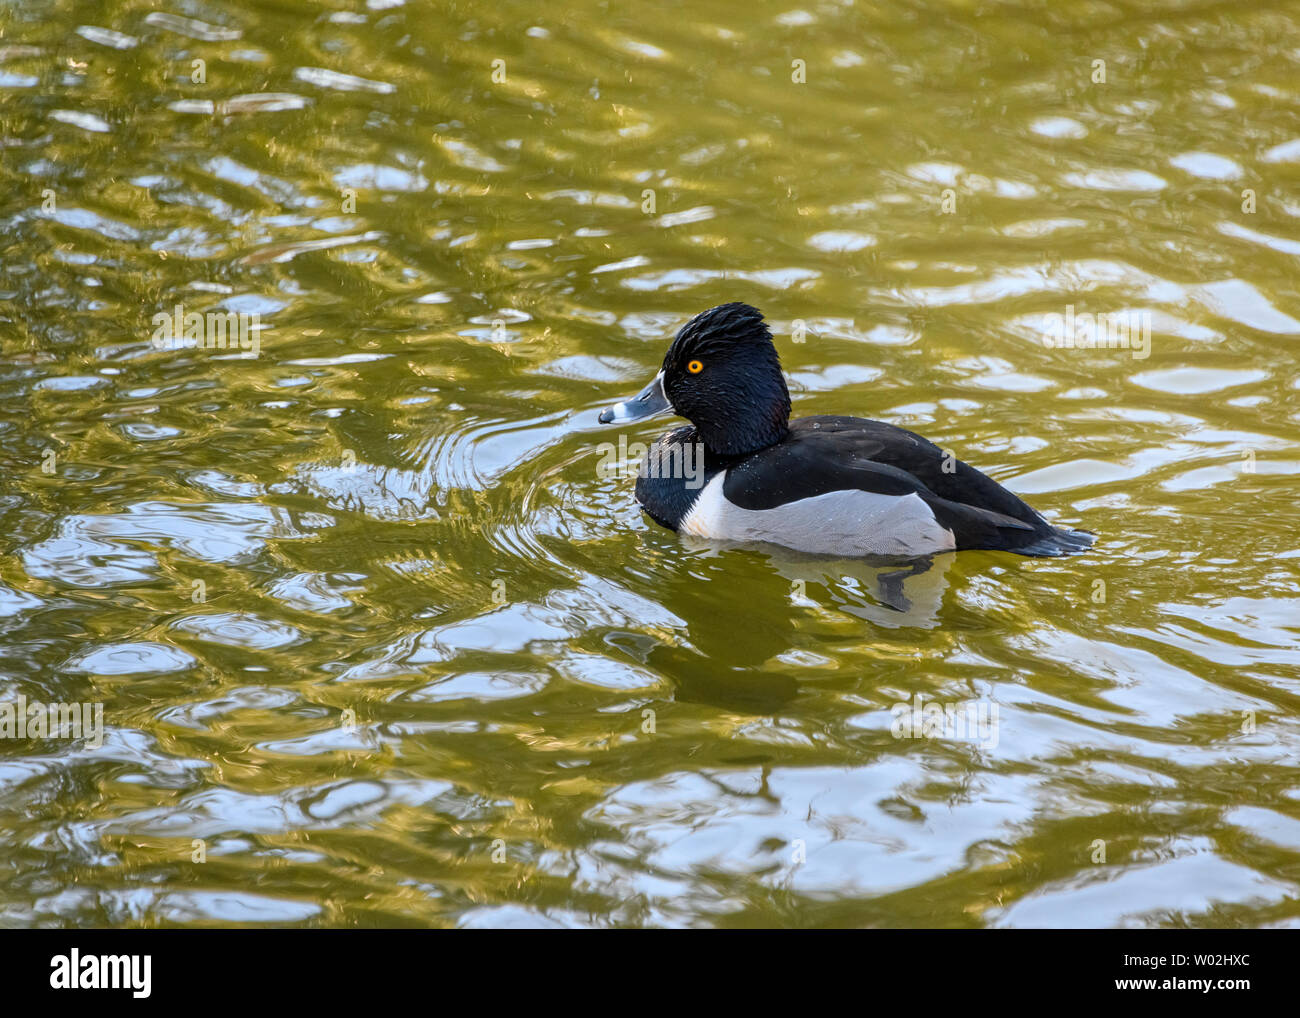 Magnifique canard mâle à col annulaire nageant dans le lac. Oiseau noir et gris. Note grise à rayures et yeux jaunes intenses. Anneau rouge autour du cou. Ensoleillé Banque D'Images